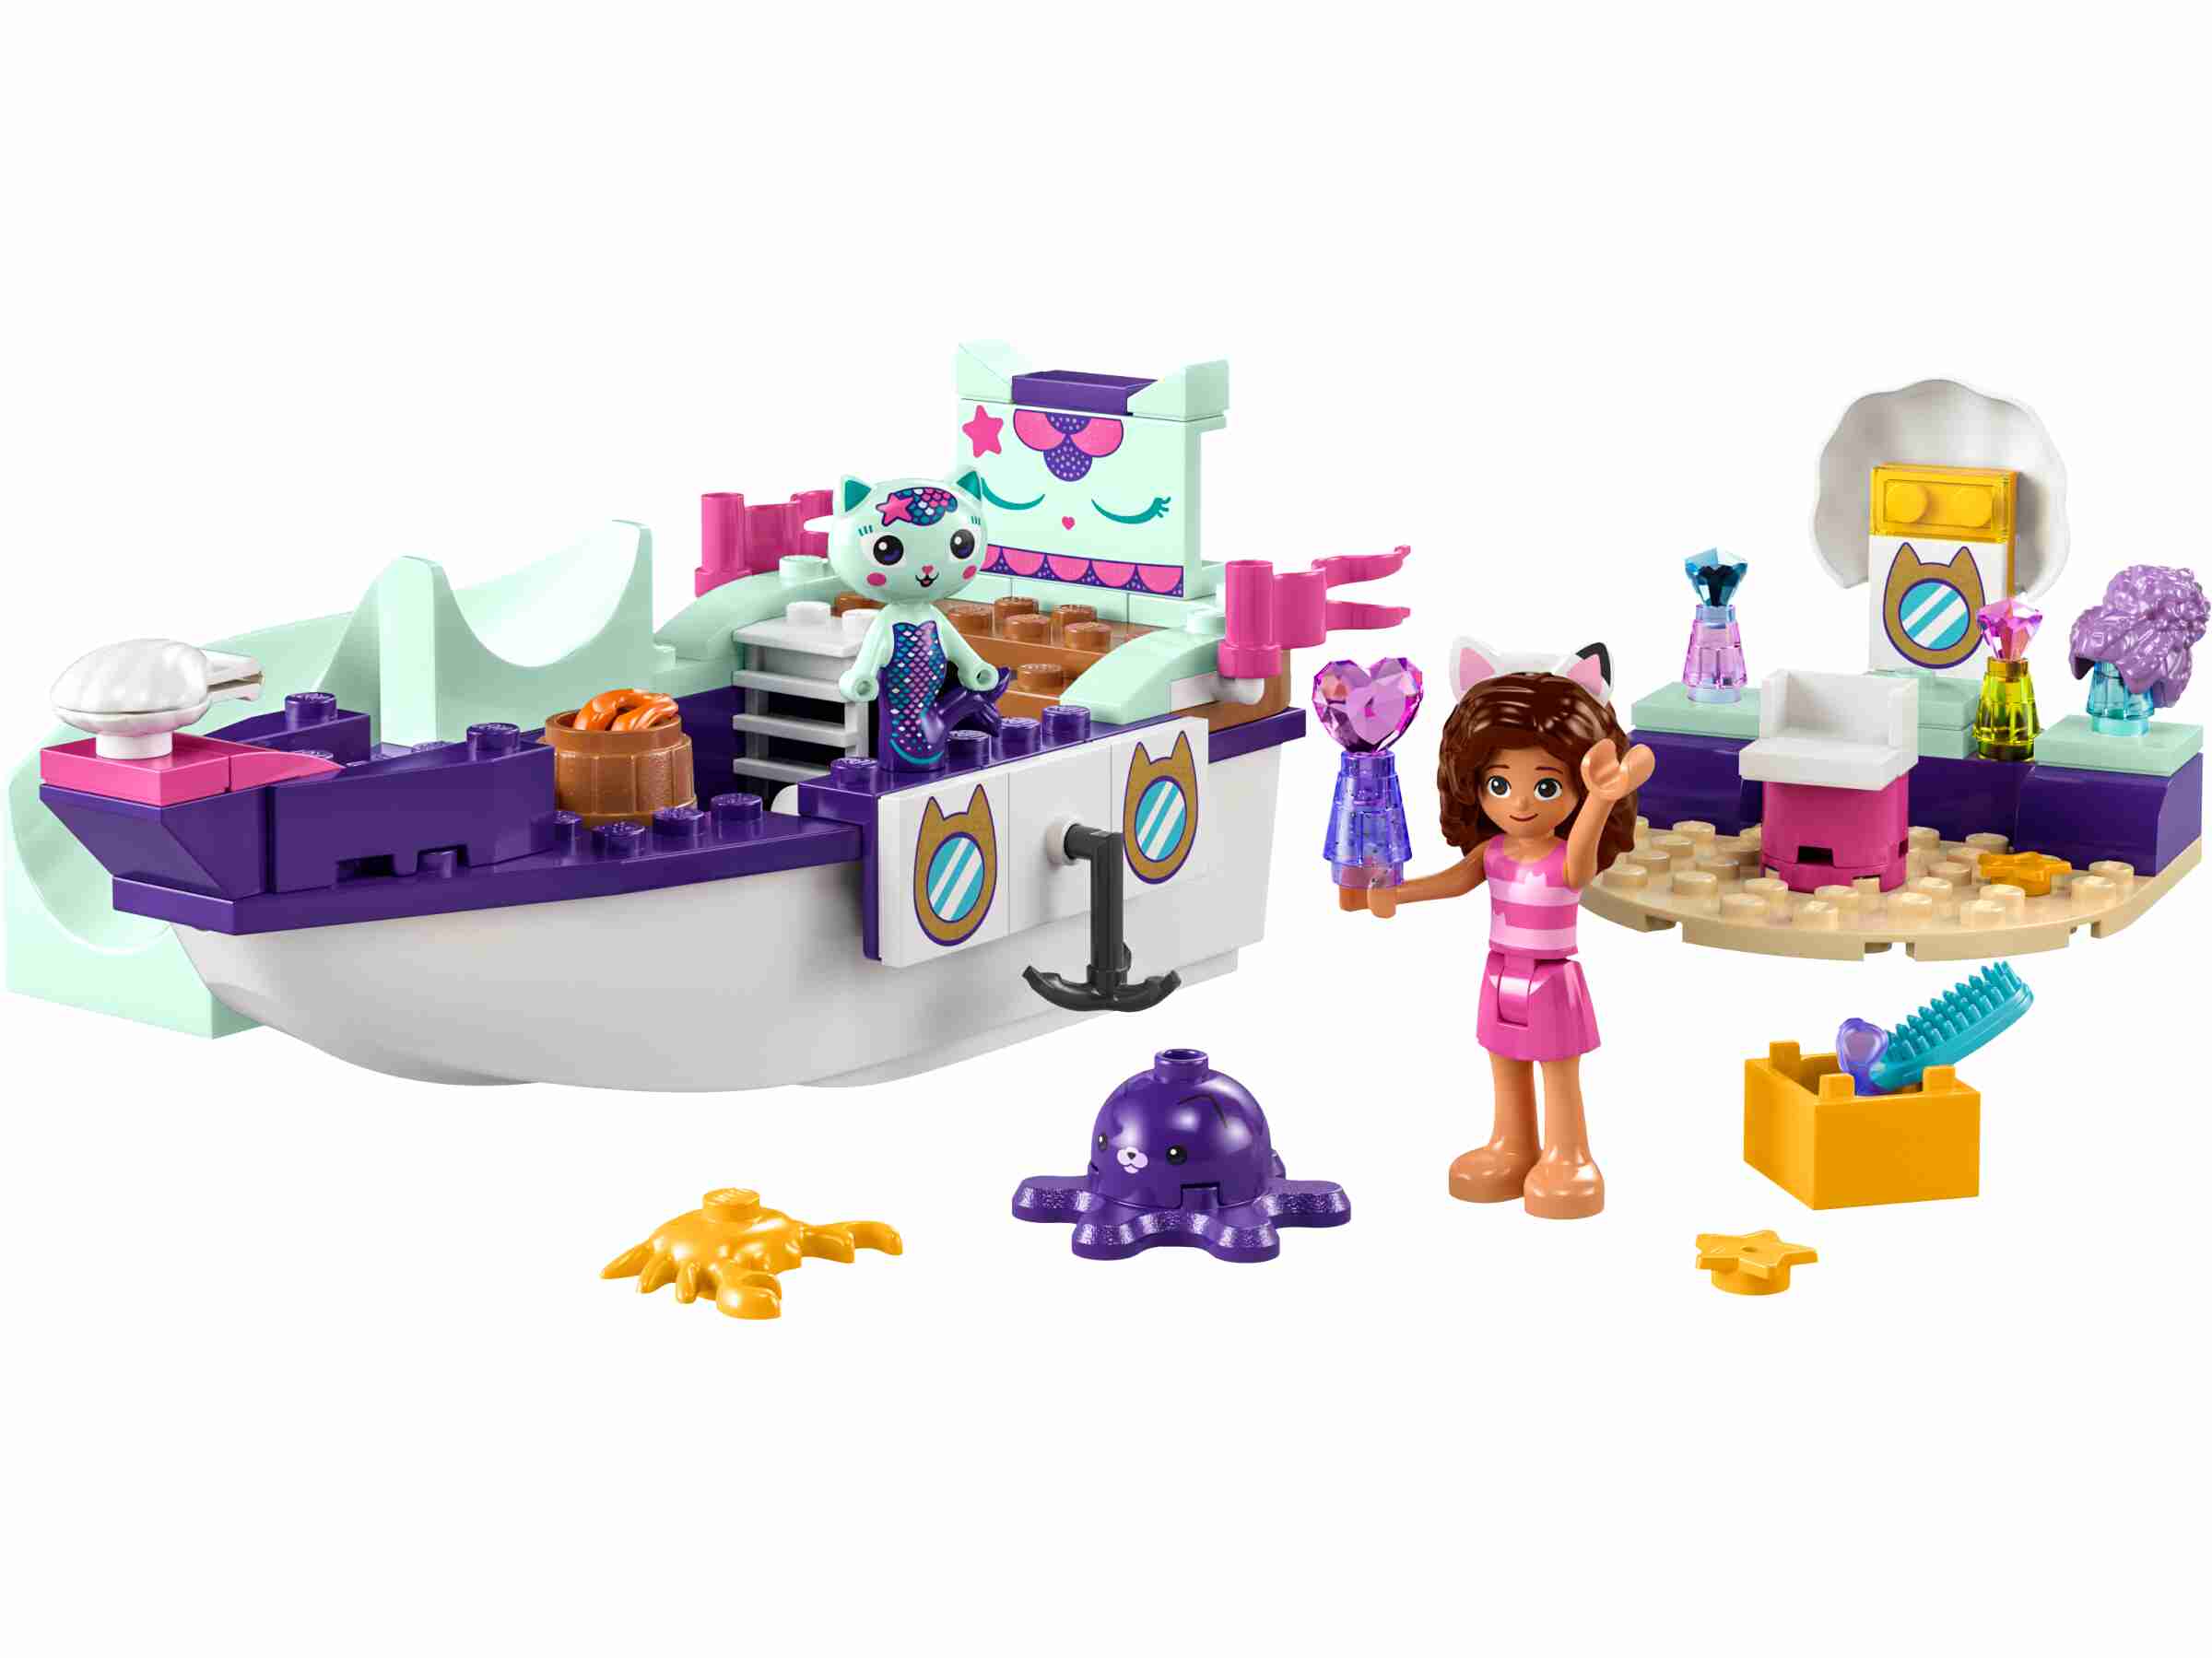 LEGO 10786 Gabby's Dollhouse Gabbys und Meerkätzchens Schiff und Spa, Zubehör